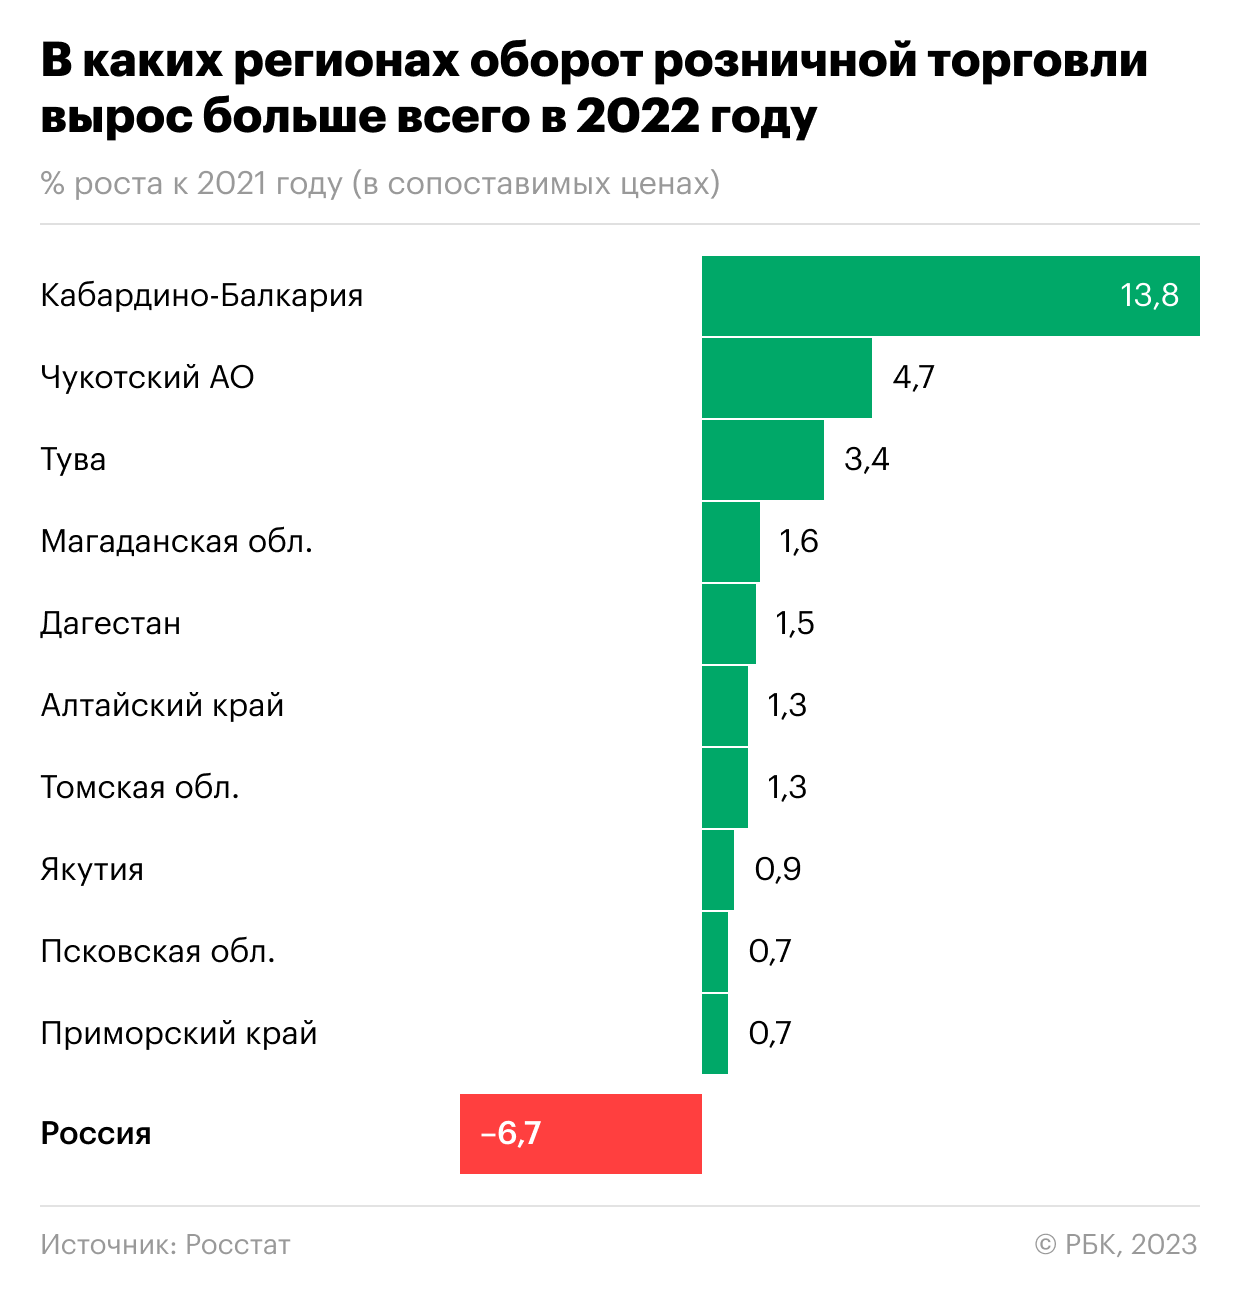 Почему в 12 регионах России росли доходы граждан вопреки спаду экономики